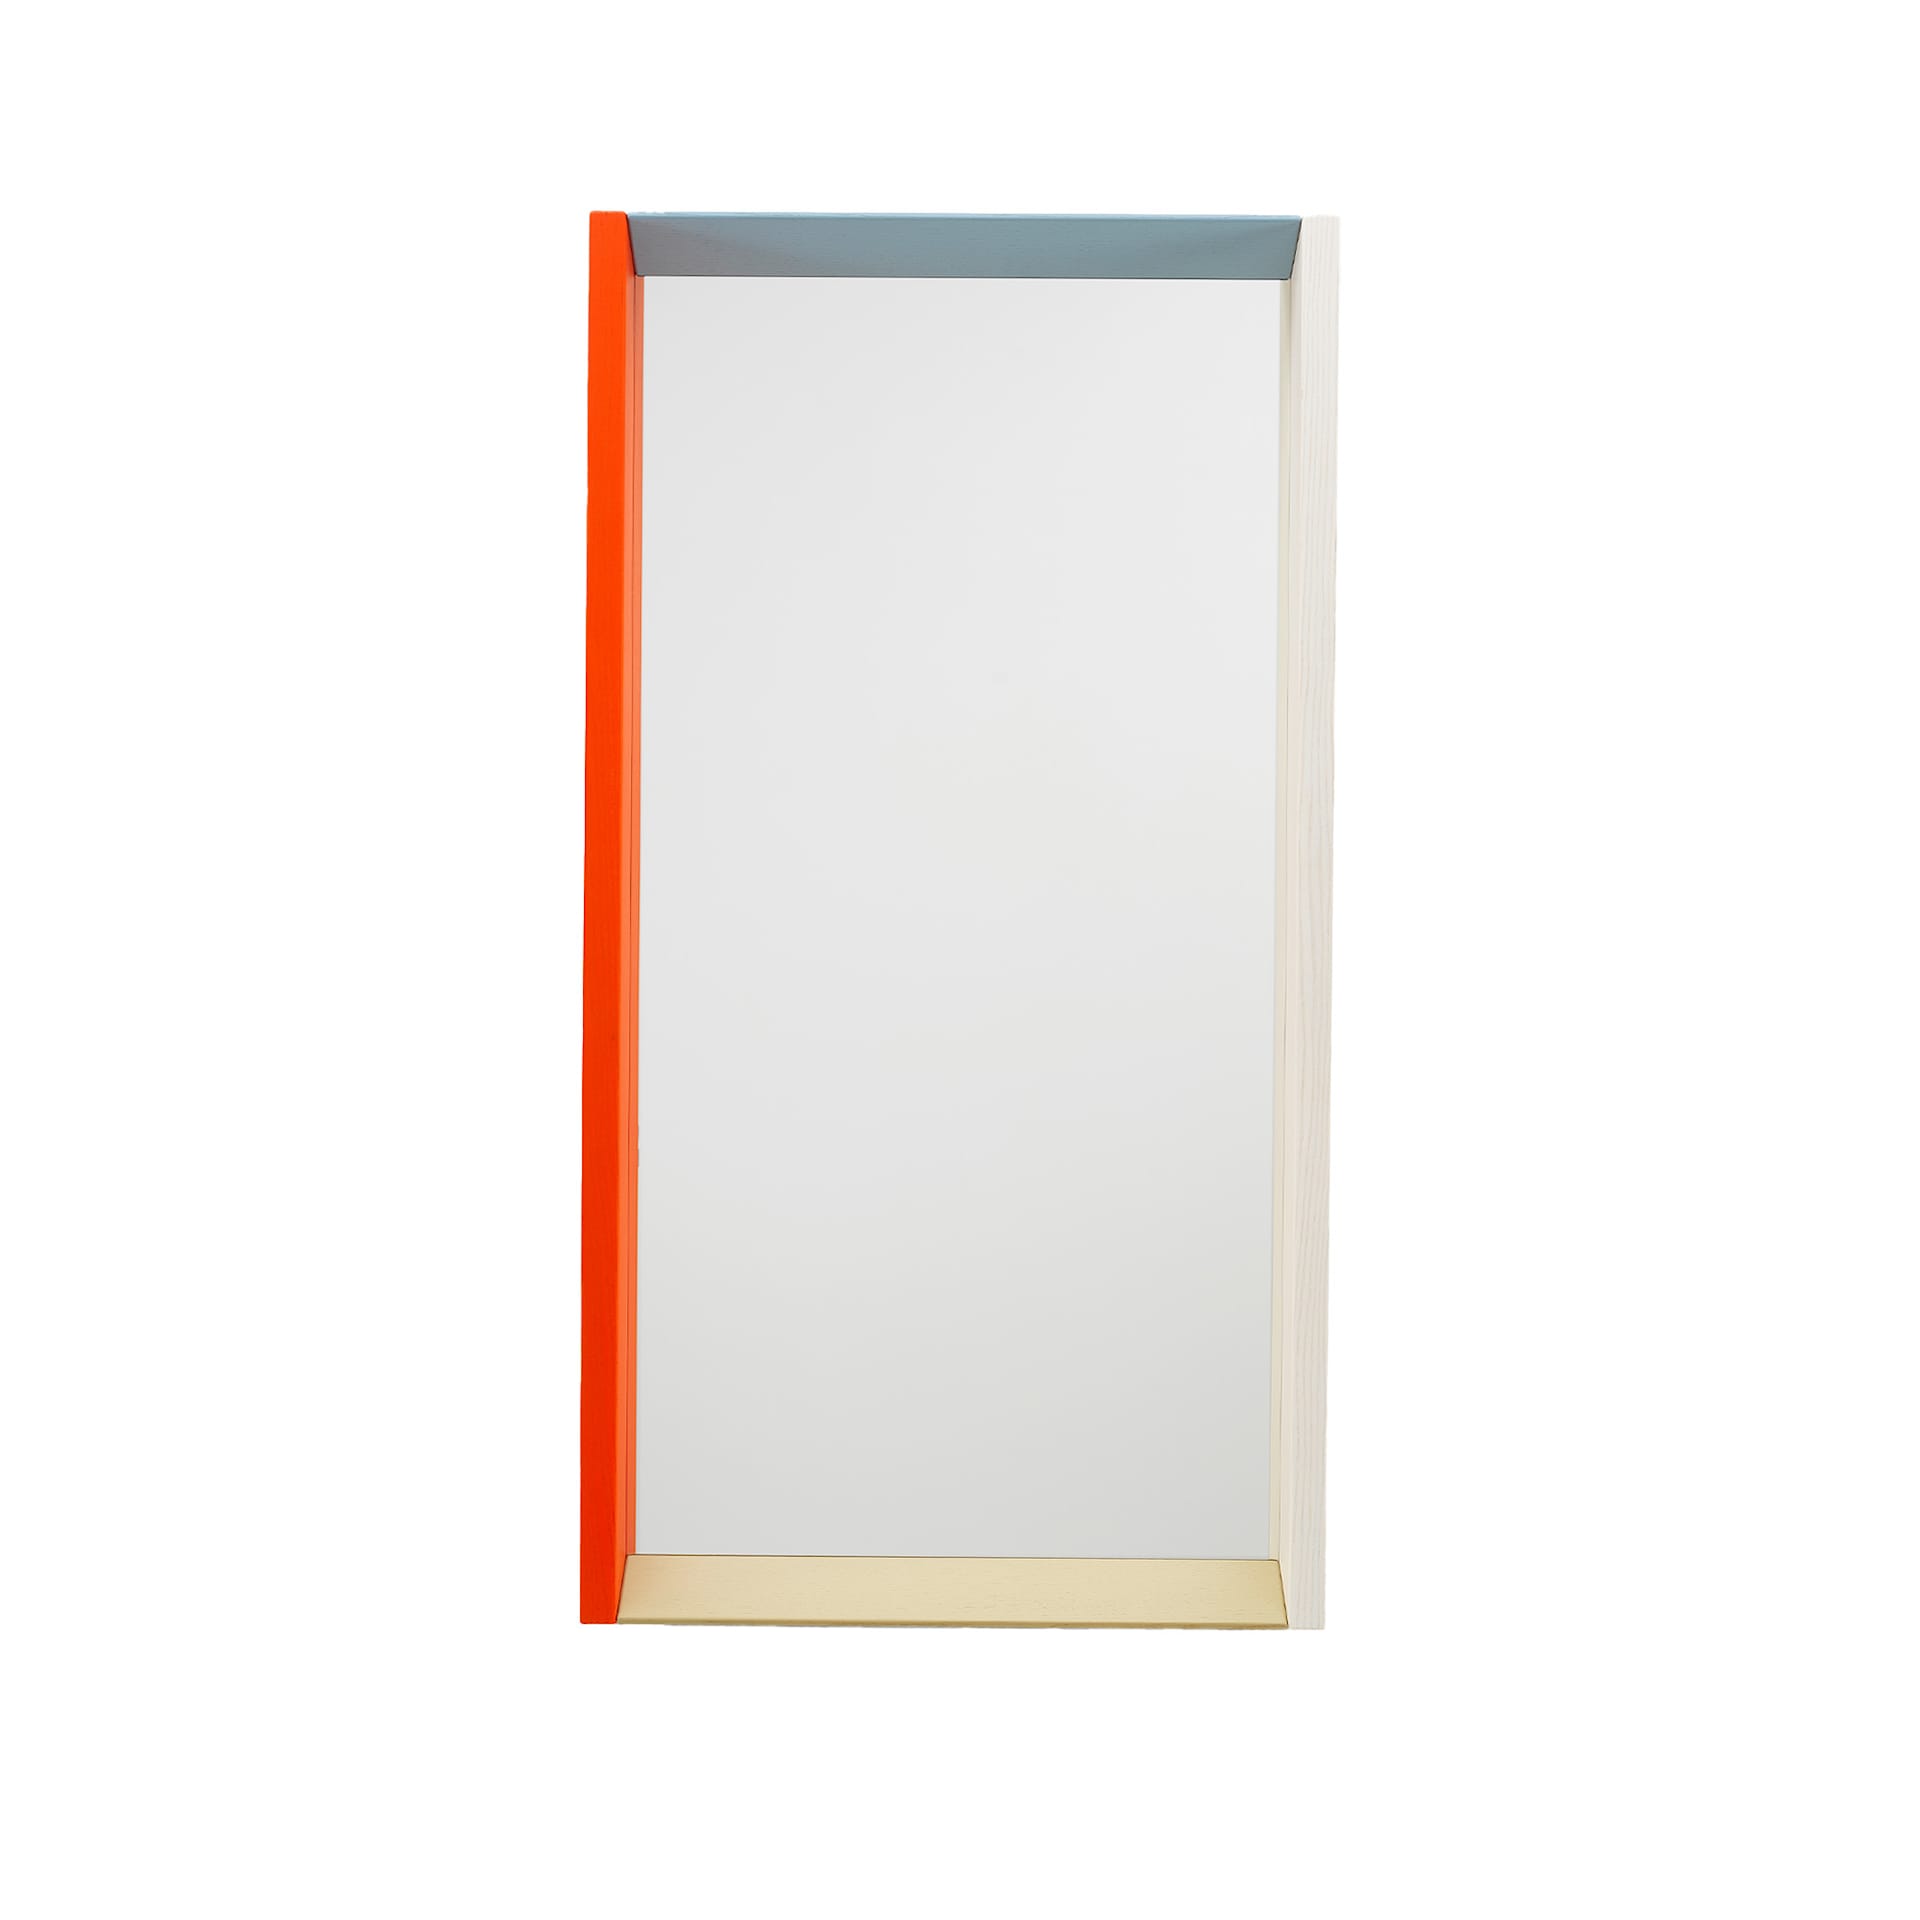 Colour Frame Mirror Medium - Vitra - NO GA